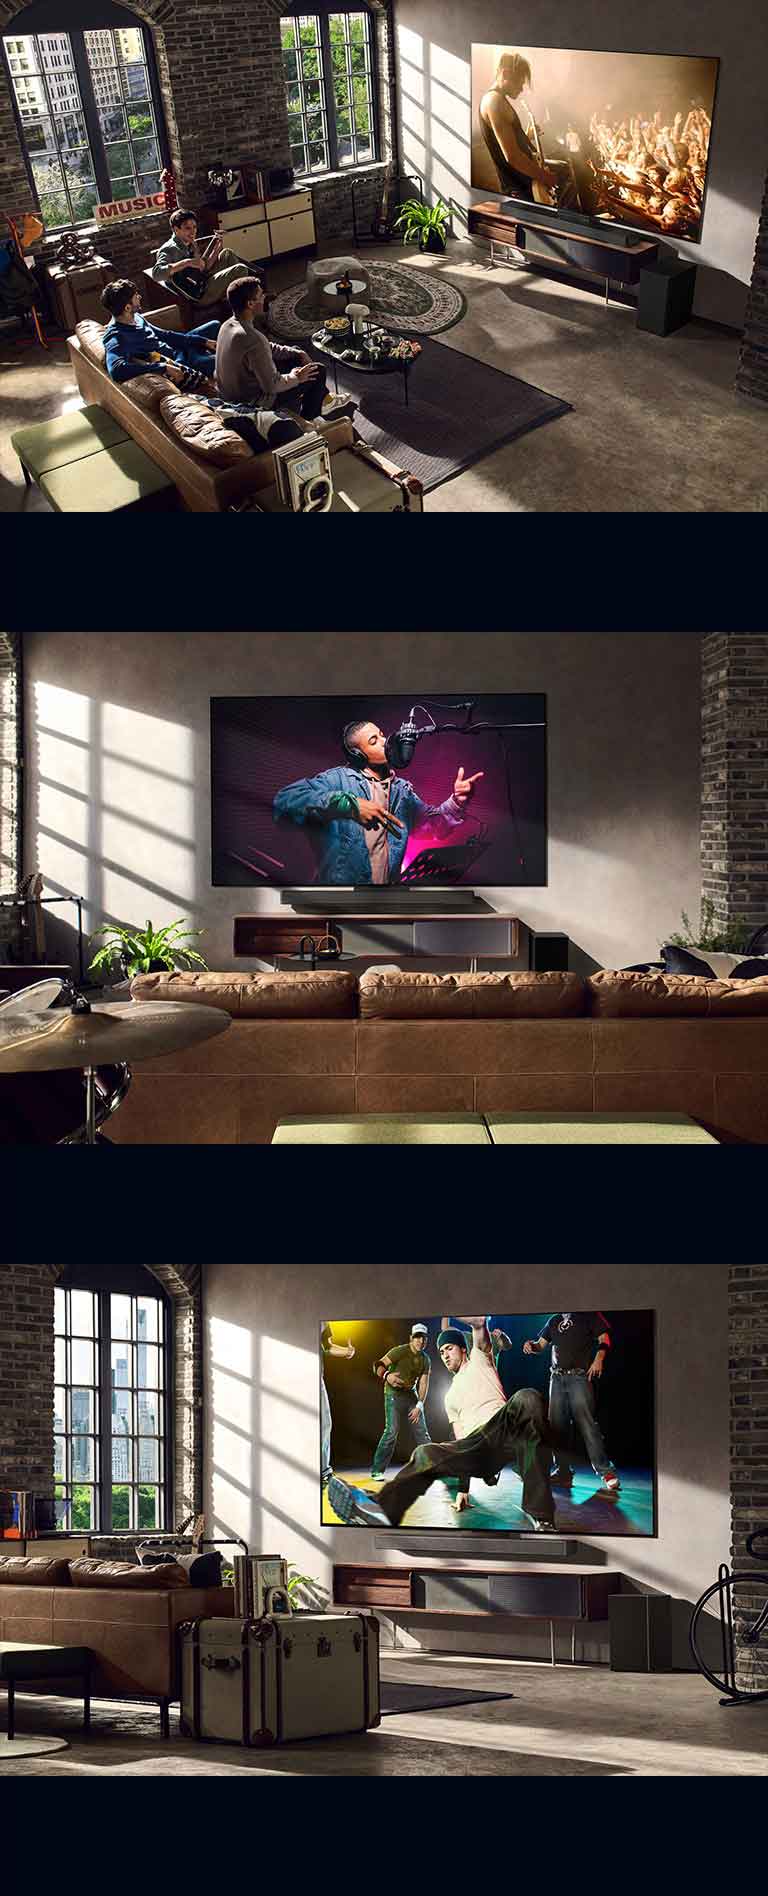 Pokazane są trzy obrazy przedstawiające życie codzienne. Od góry: trzej mężczyźni oglądają koncert na wideo w salonie. Na ścianie wisi telewizor LG wyświetlający scenę z nagrania muzycznego i telewizor LG na ścianie przedstawiający scenę tańca pokazaną pod kątem.